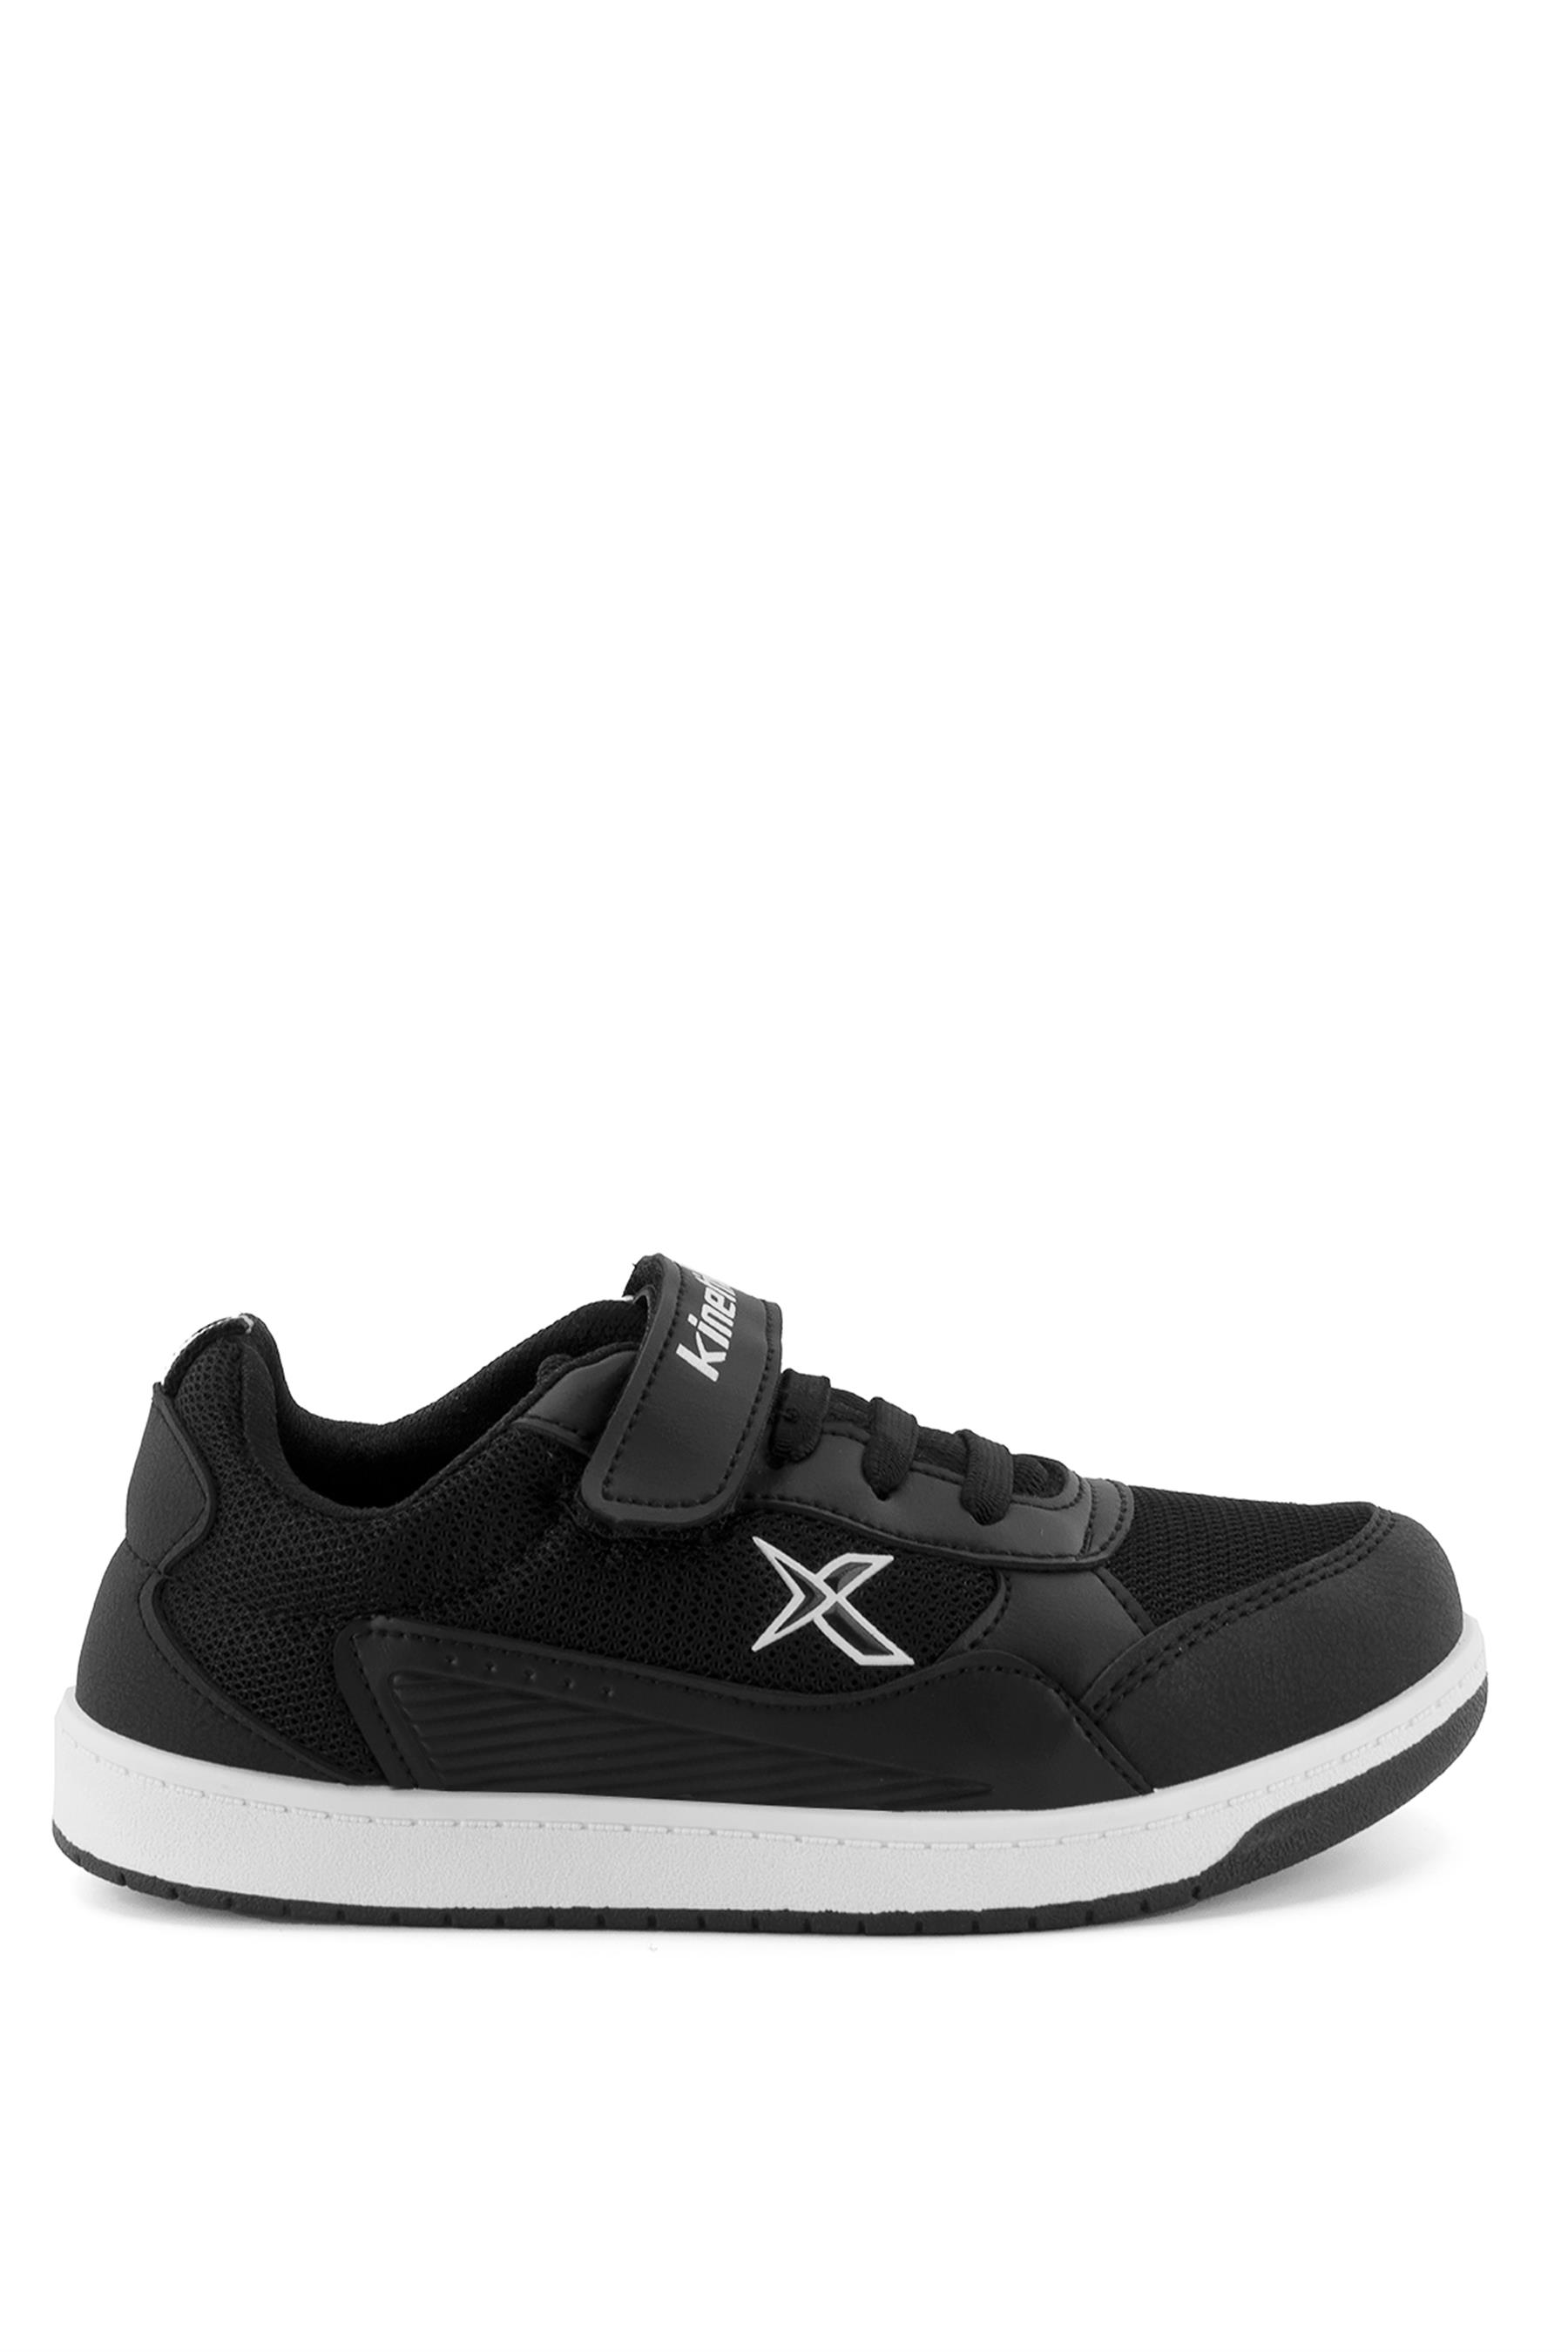 Kinetix 101332236 Rooper Erkek Çocuk Spor Ayakkabı Siyah - Beyaz - Ayakkabı  Fuarı Elit